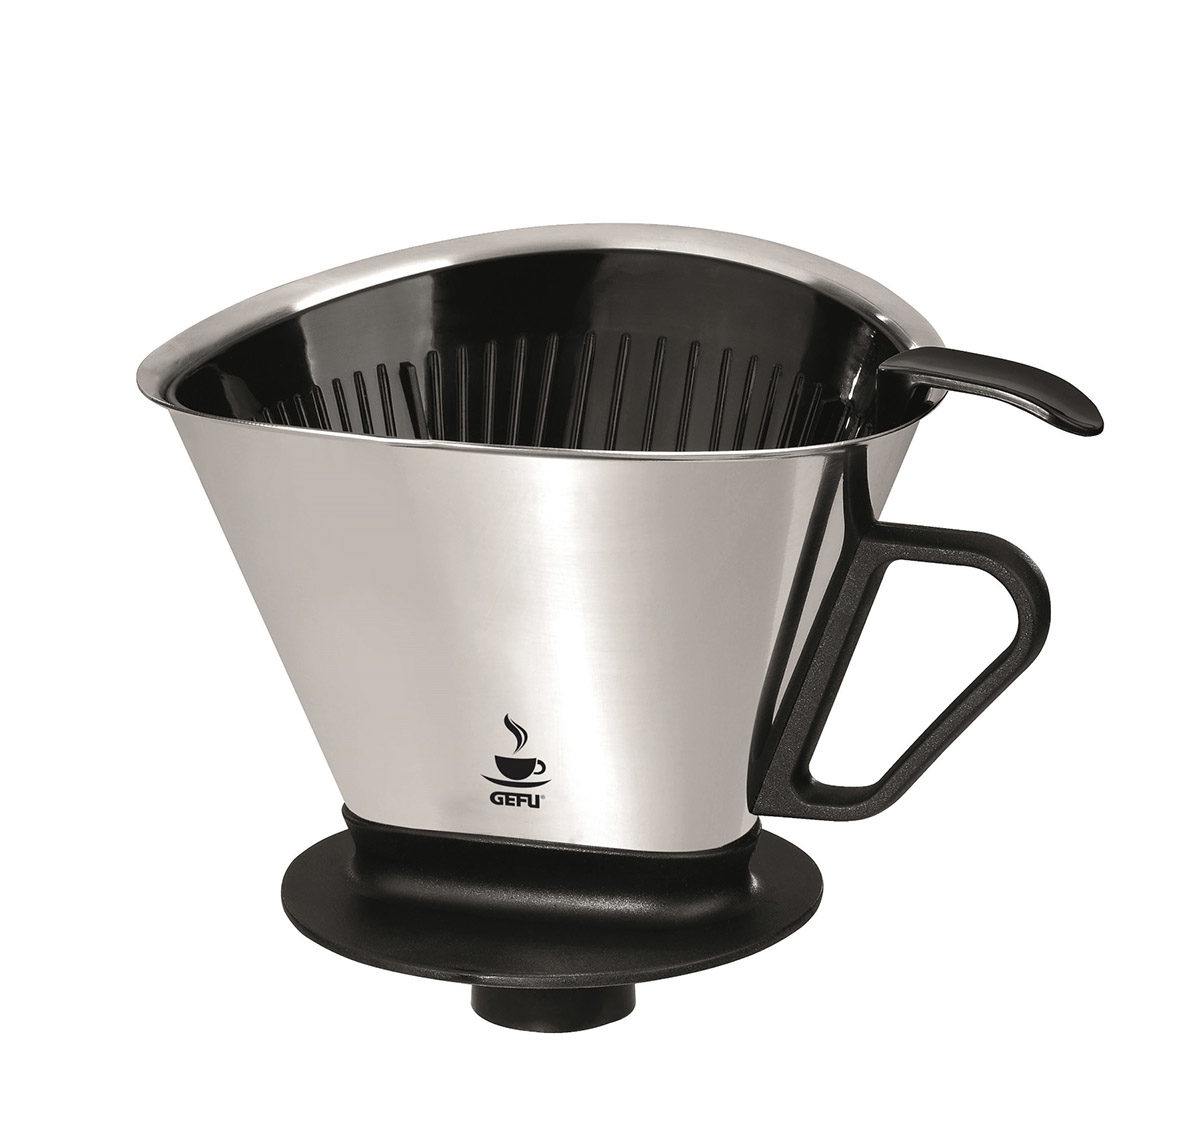 Küchenhelfer Gefu aus Kunststoff in Edelstahl Schwarz GEFU Kaffee-Filter aus hochwertigem Edelstahl & Kunststoff